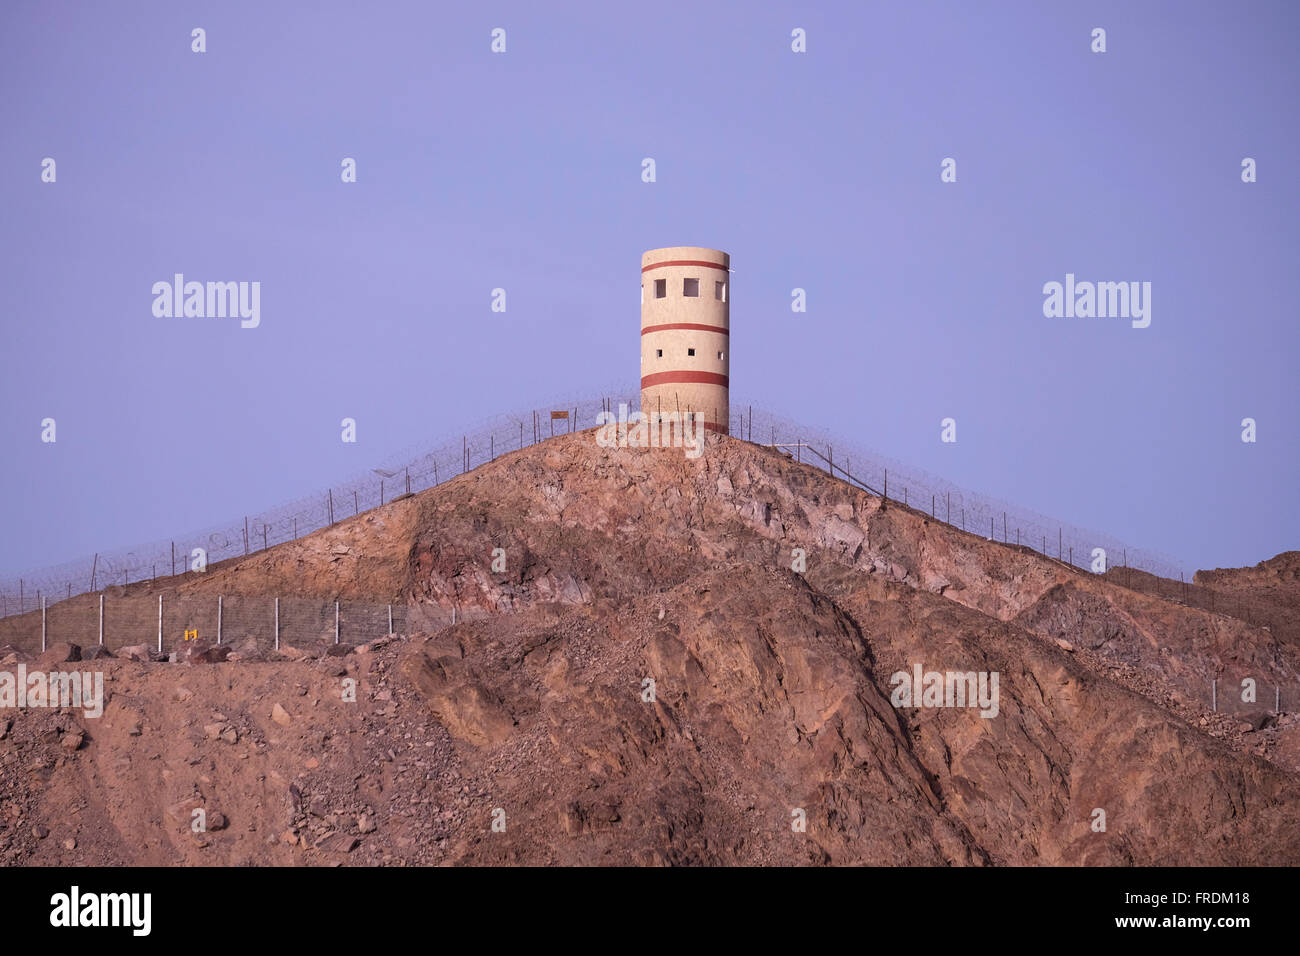 Eine ägyptische militärische Wachturm an der Grenze Israel Ägypten in die Stadt Eilat befindet sich an der Nordspitze des Roten Meeres am Golf von Aqaba. Stockfoto